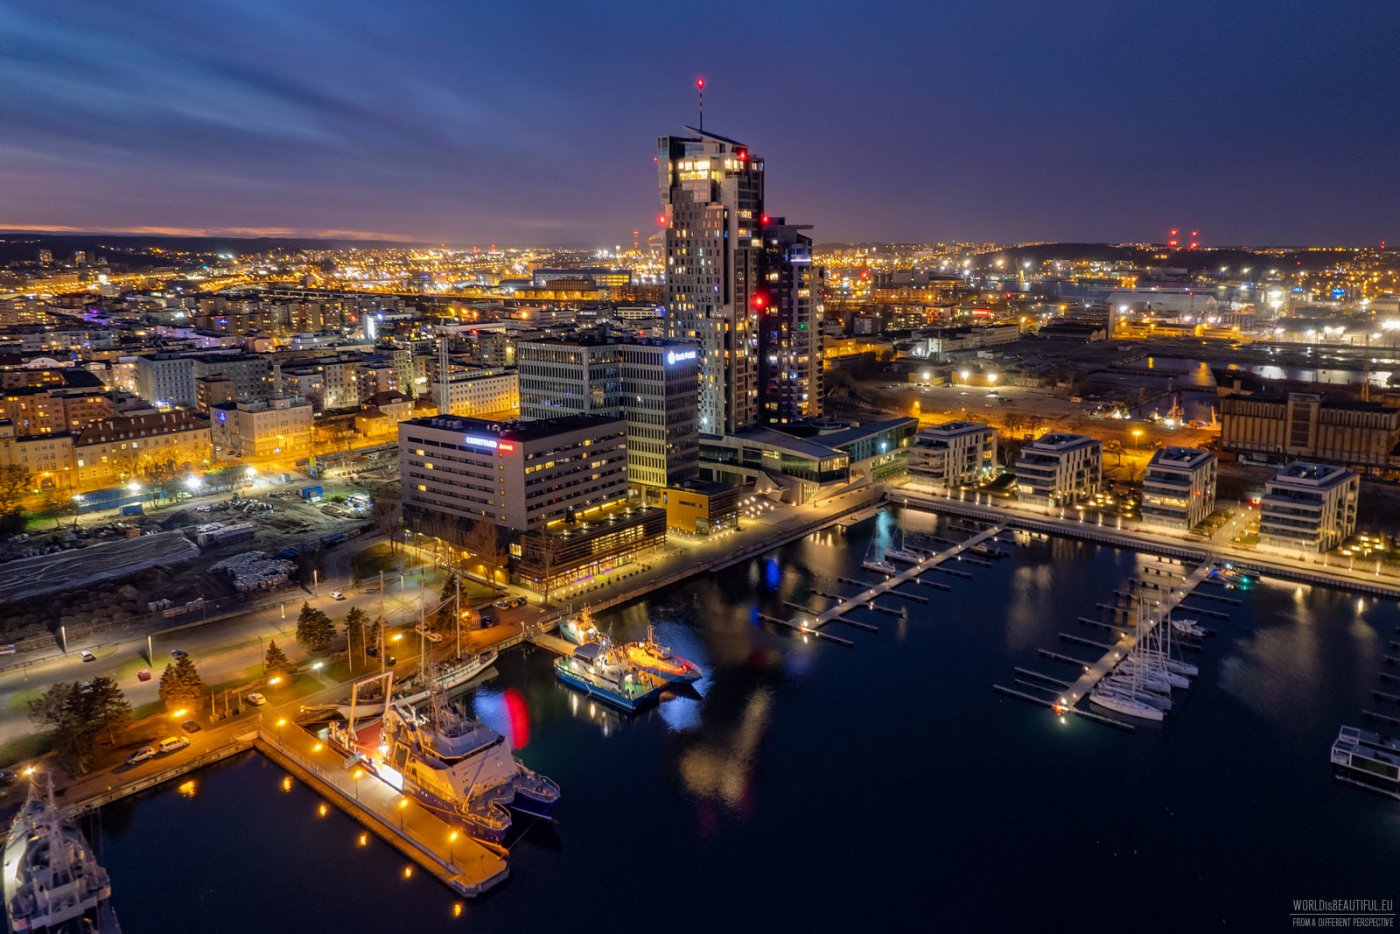 Zgodnie z nową edycją rankingu, Gdynia jest jednym z najlepszych miast w Europie pod względem strategicznego podejścia do obsługi bezpośrednich inwestycji zagranicznych, fot. Foto Podróże, Worldisbeautiful.eu / zdjęcie z facebookowej grupy „Gdynia w obiektywie”